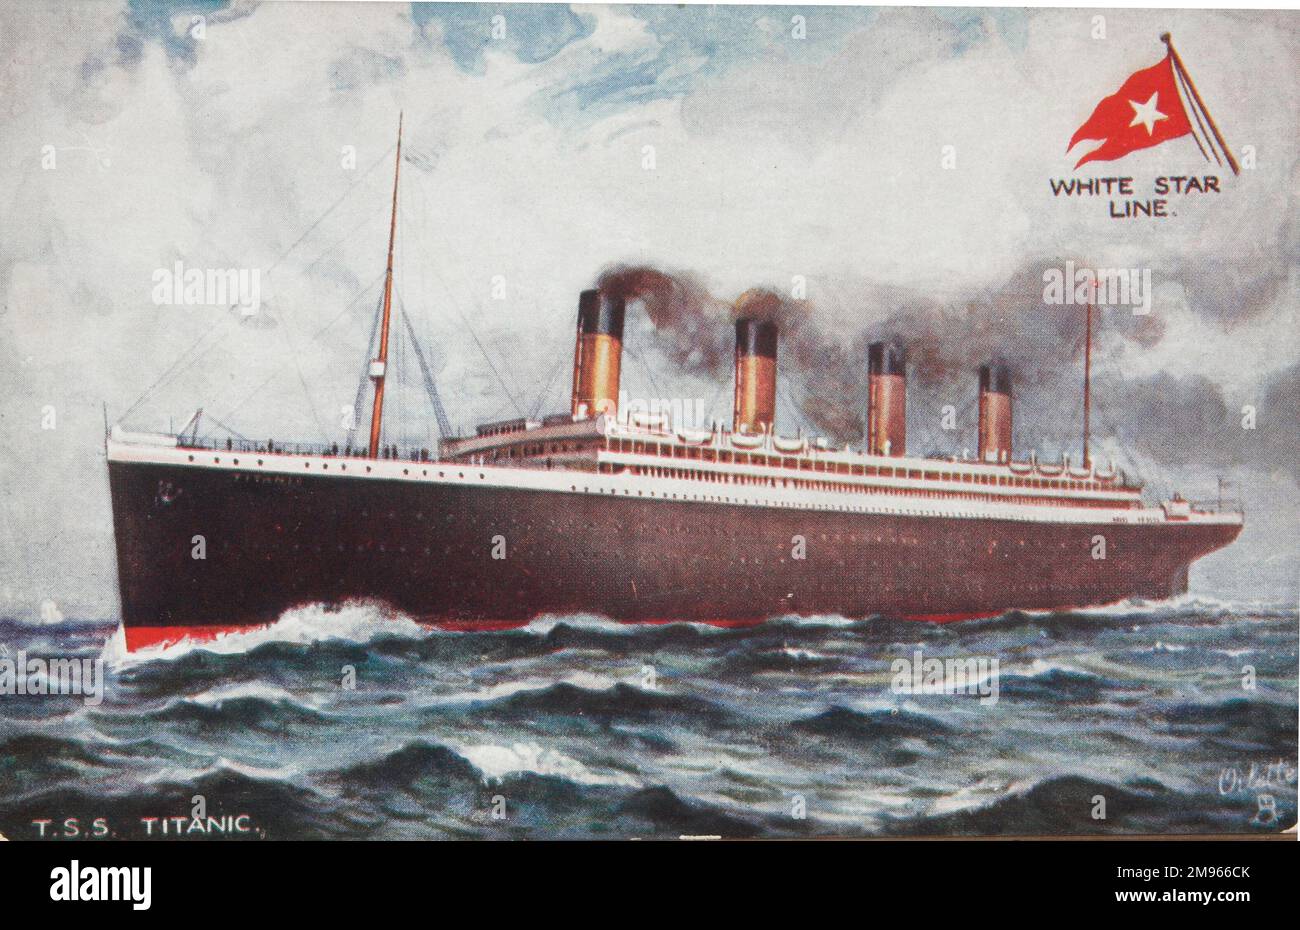 Una postal promocional de White Star Line con una ilustración del nefasto trasatlántico Titanic. T.S.S. en la tarjeta postal es para vaporera de triple tornillo. Algunos observadores han discutido si esta postal muestra el Titanic (!) a pesar de que está etiquetado como tal en la propia tarjeta... Foto de stock